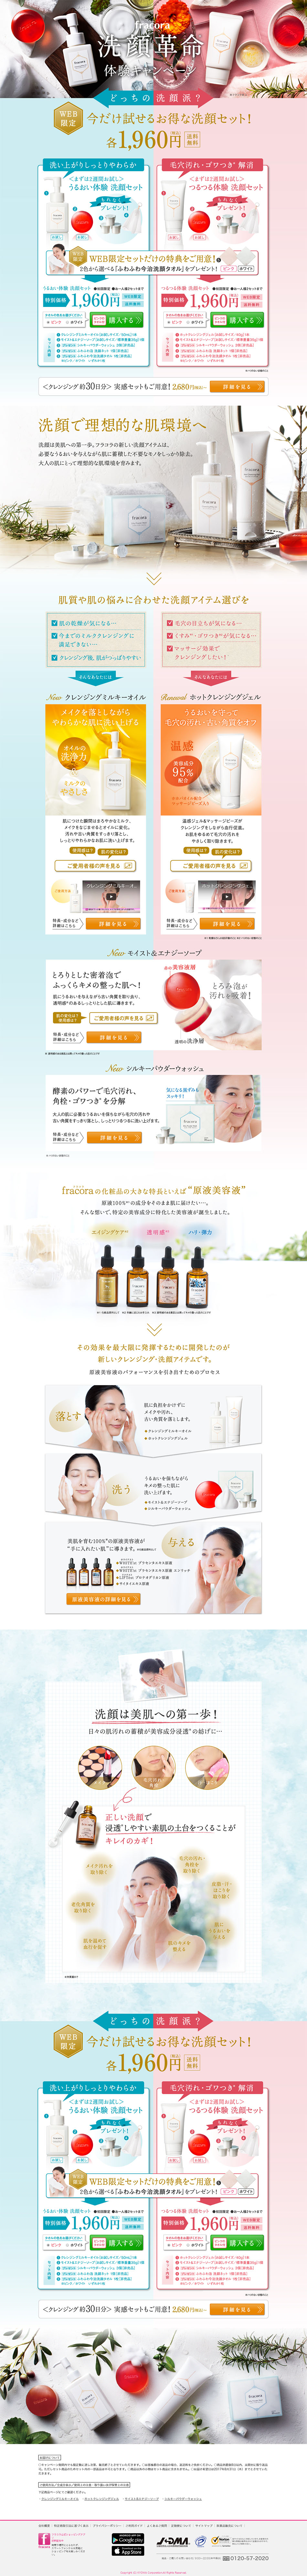 洗顔革命体験キャンペーン_pc_1